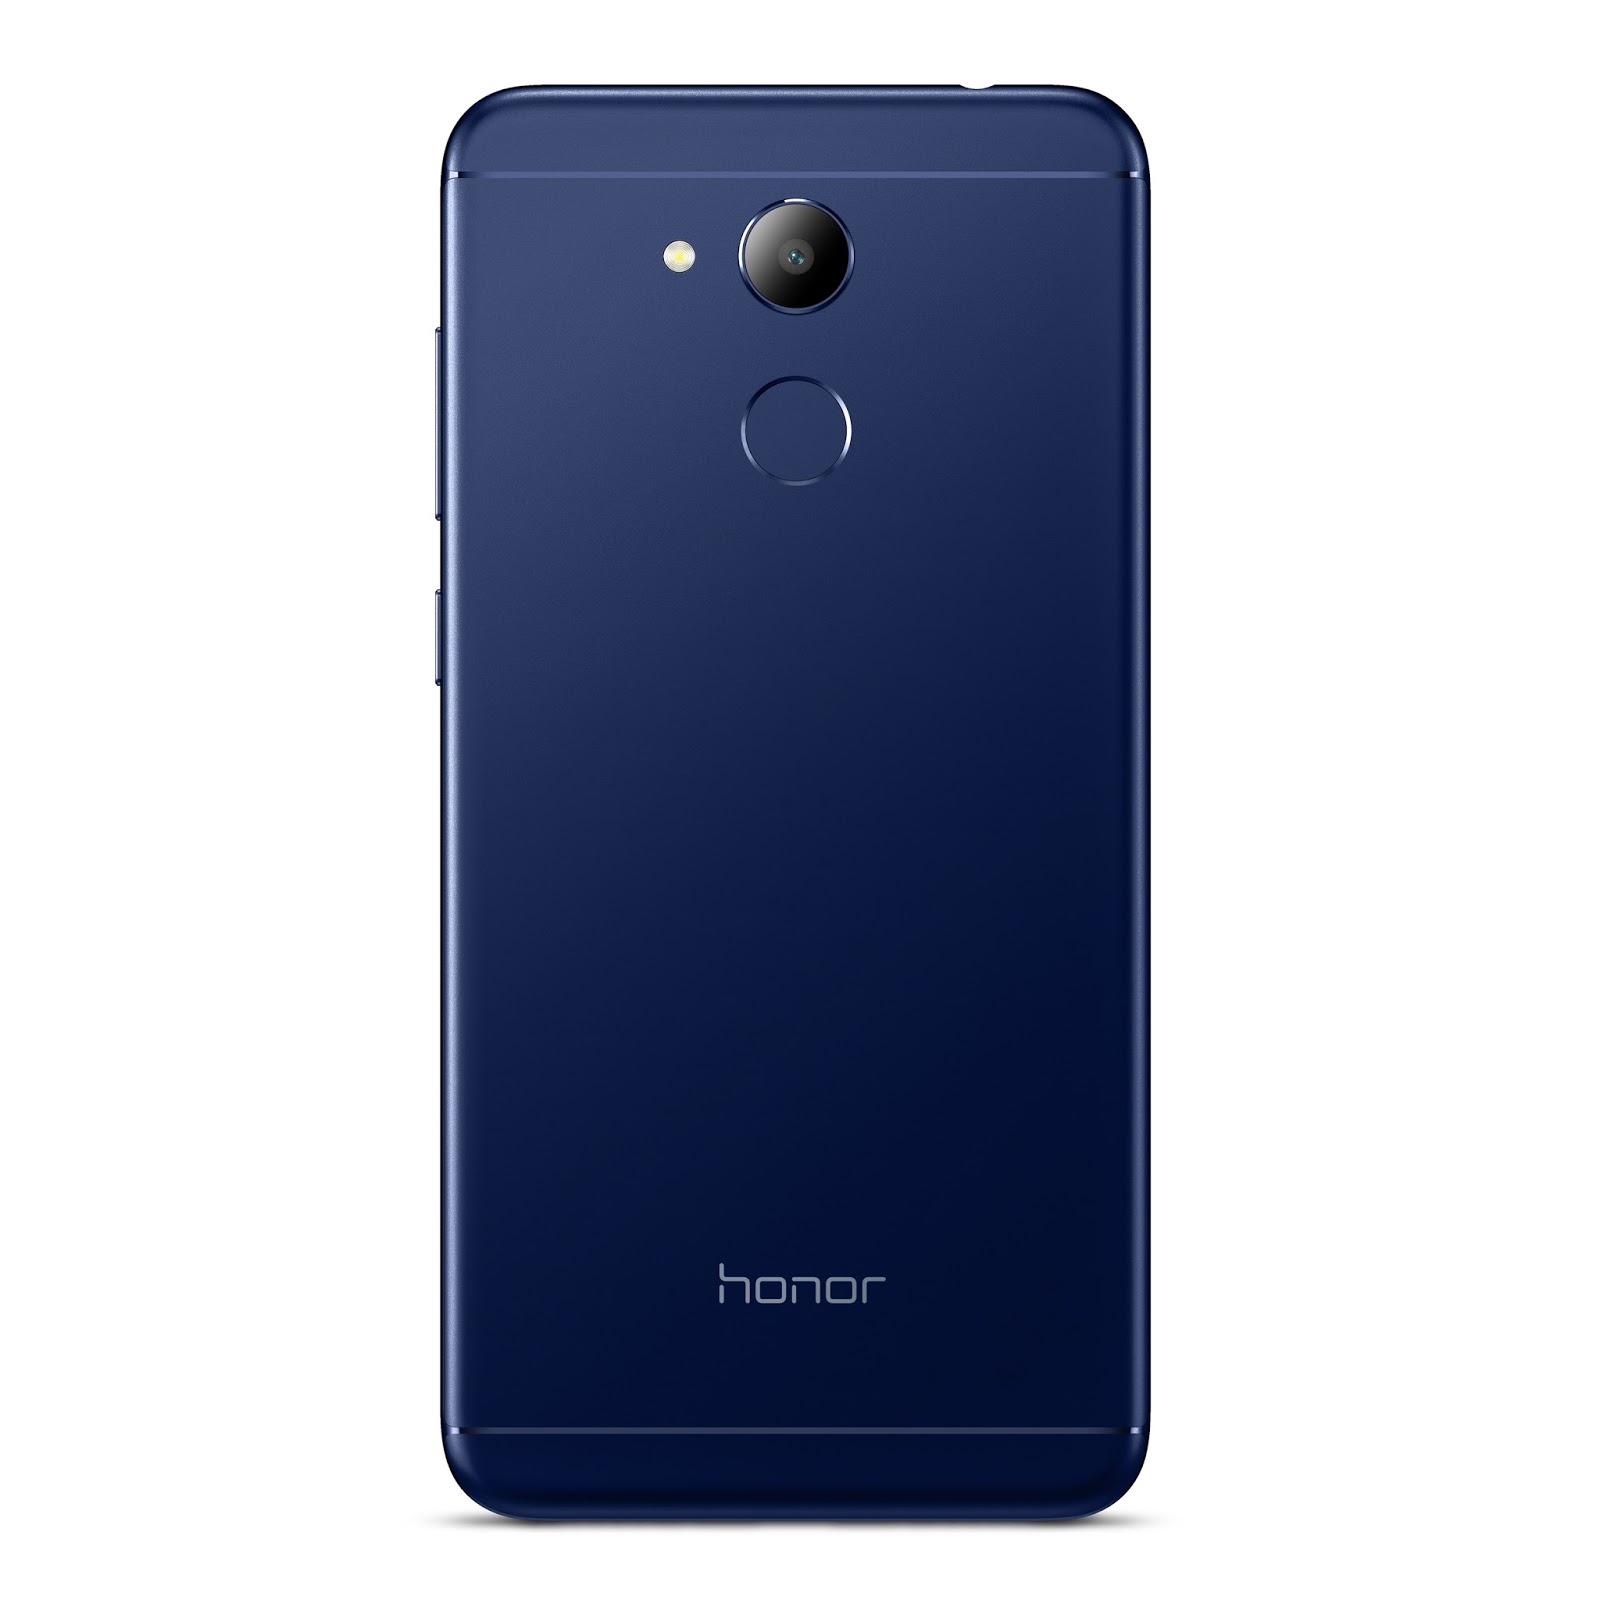 Honor 6 синий. Huawei Honor 6c Pro. Honor 6c Pro 32gb. Смартфон Honor 6c. Хуавей хонор 6c Pro.